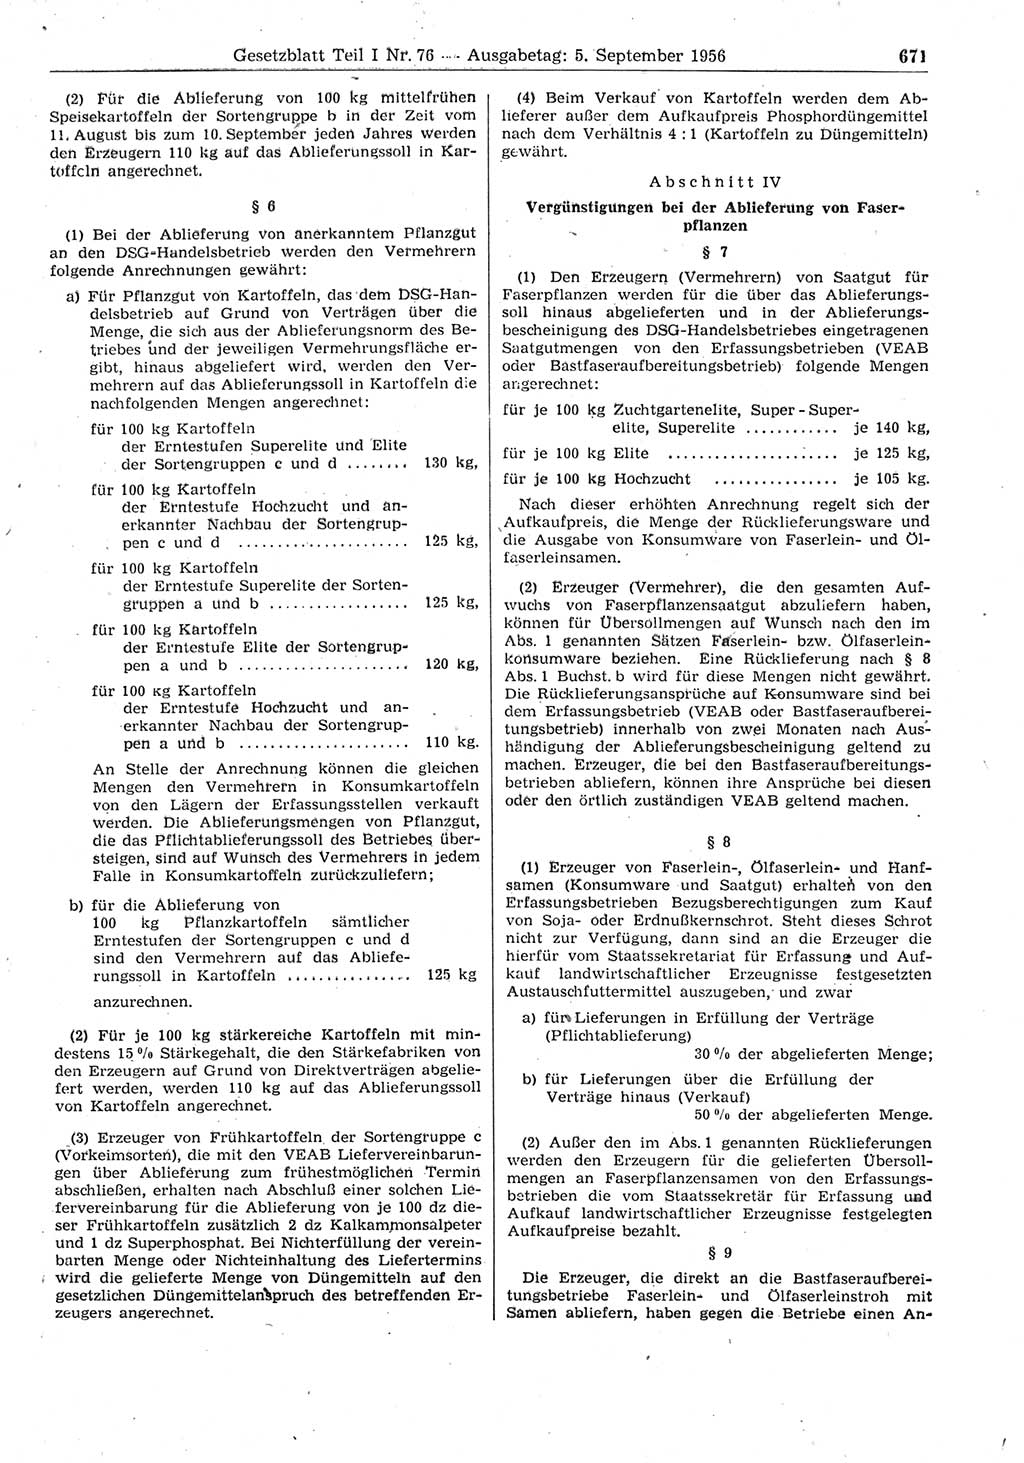 Gesetzblatt (GBl.) der Deutschen Demokratischen Republik (DDR) Teil Ⅰ 1956, Seite 671 (GBl. DDR Ⅰ 1956, S. 671)